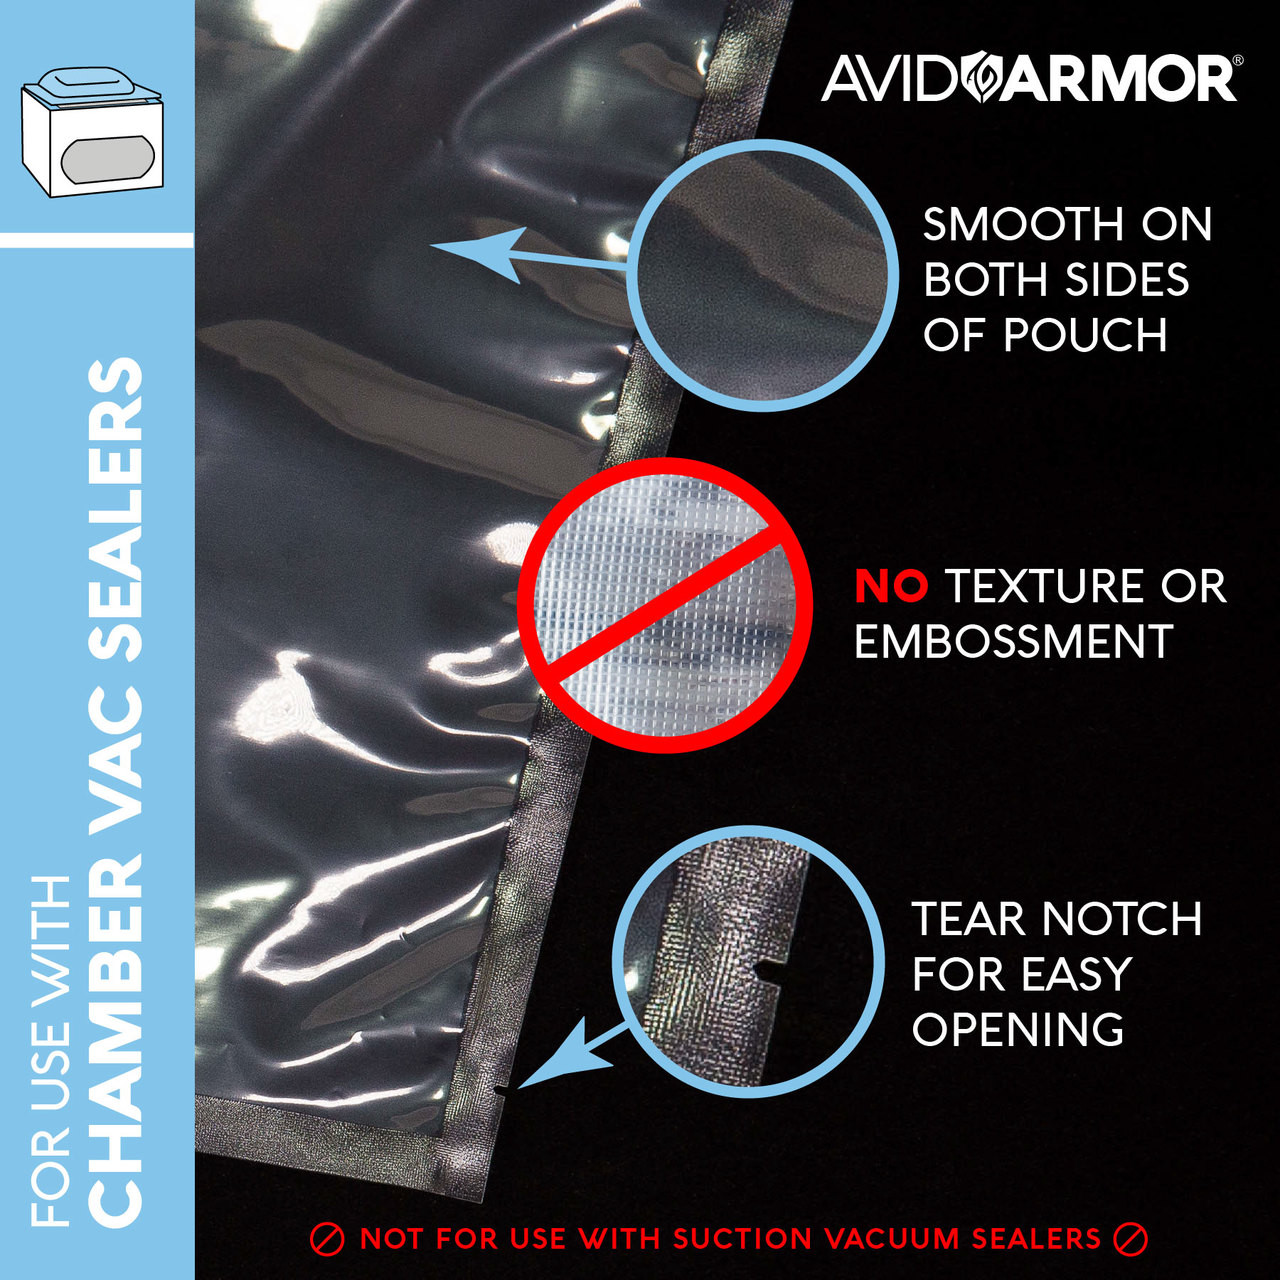 Avid Armor ® 6 x 10 Case Vacuum Seal Bags - 1200 Count - Bulk Deal